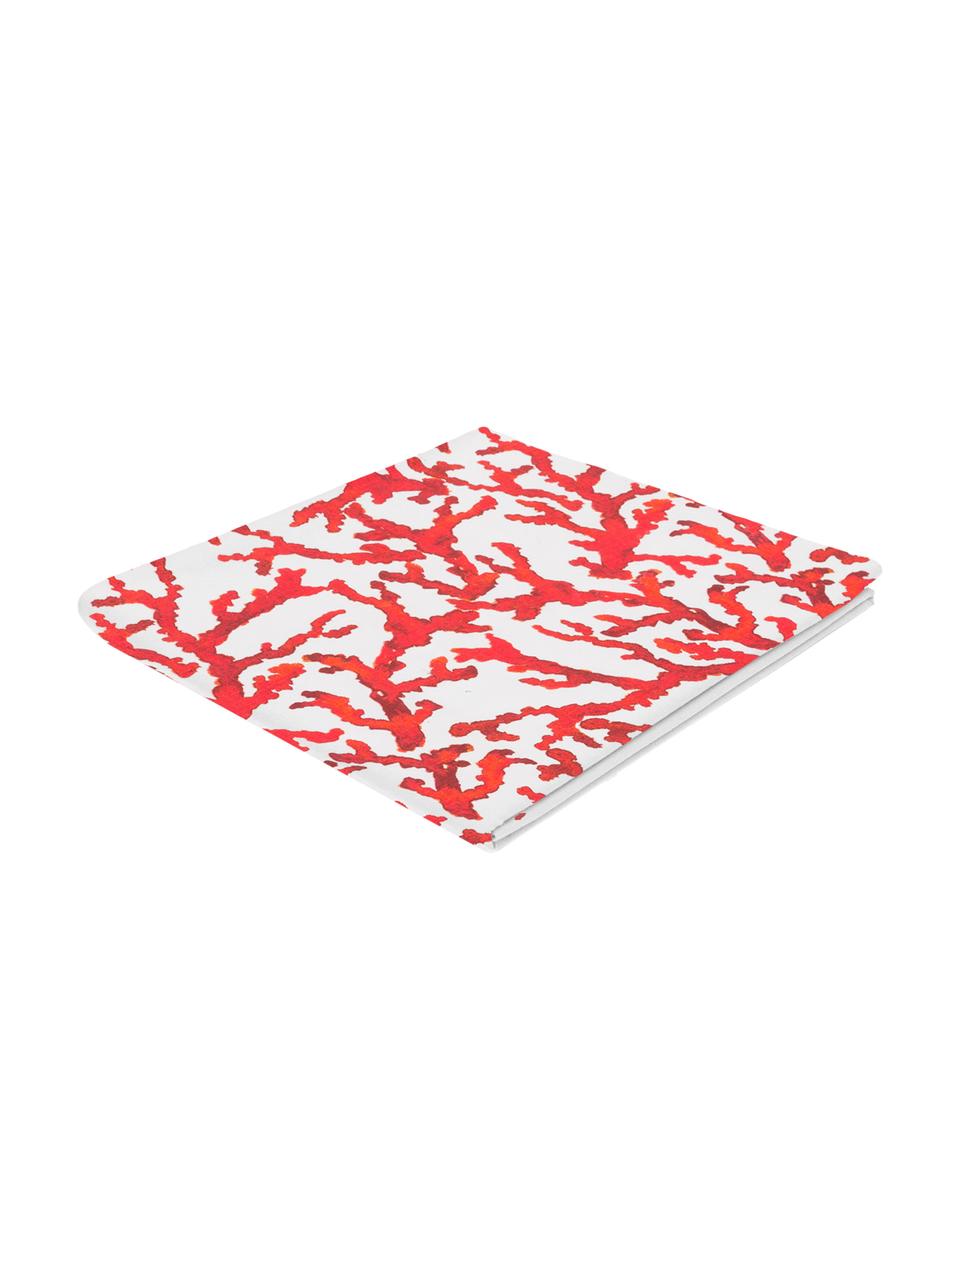 Baumwoll-Tischdecke Estran mit Korallenprint, Baumwolle, Rot, Weiss, Für 4 - 6 Personen (B 160 x L 160 cm)